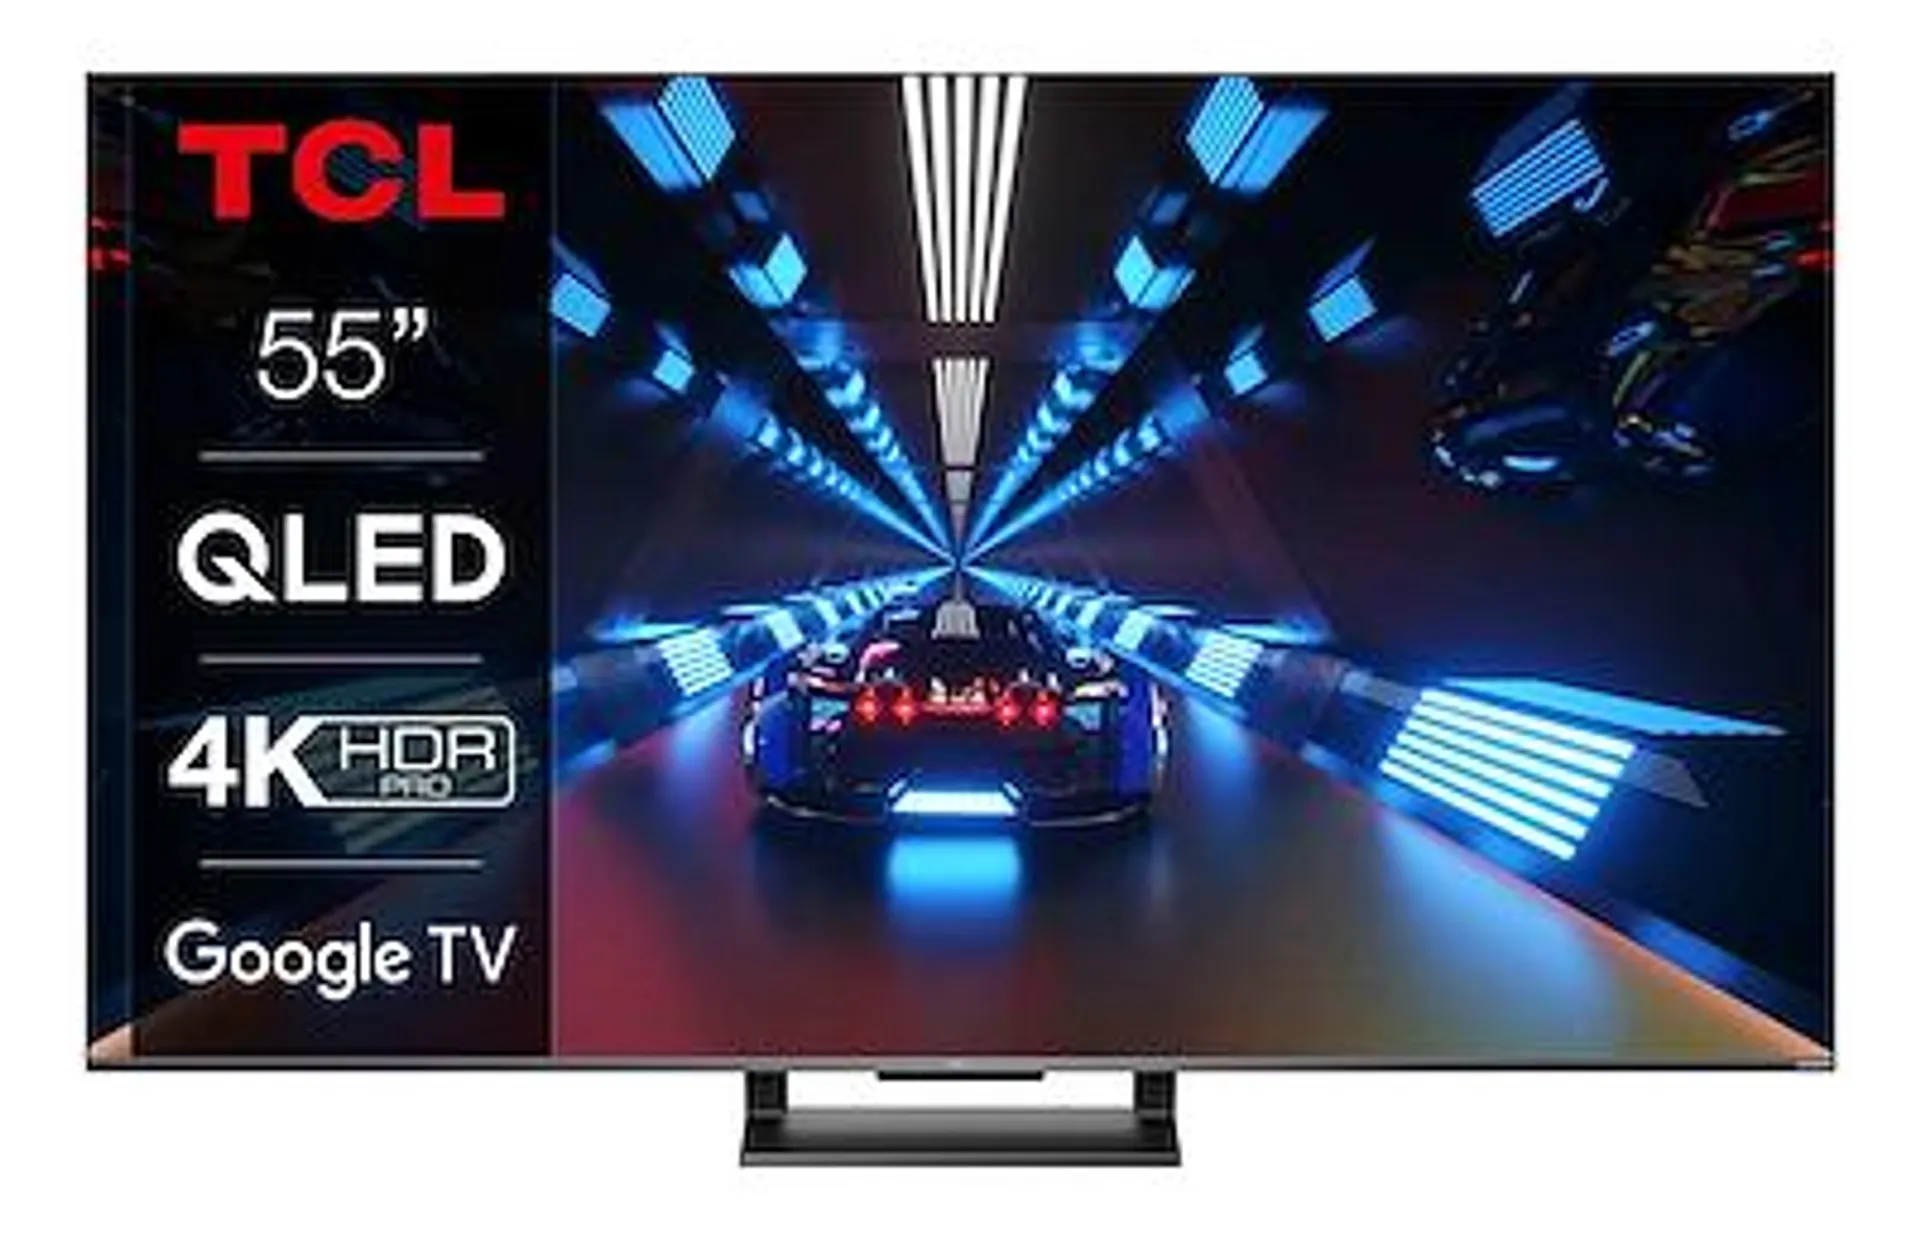 Dimensioni schermo (pollici) 55 - Smart Tv - Risoluzione 4K